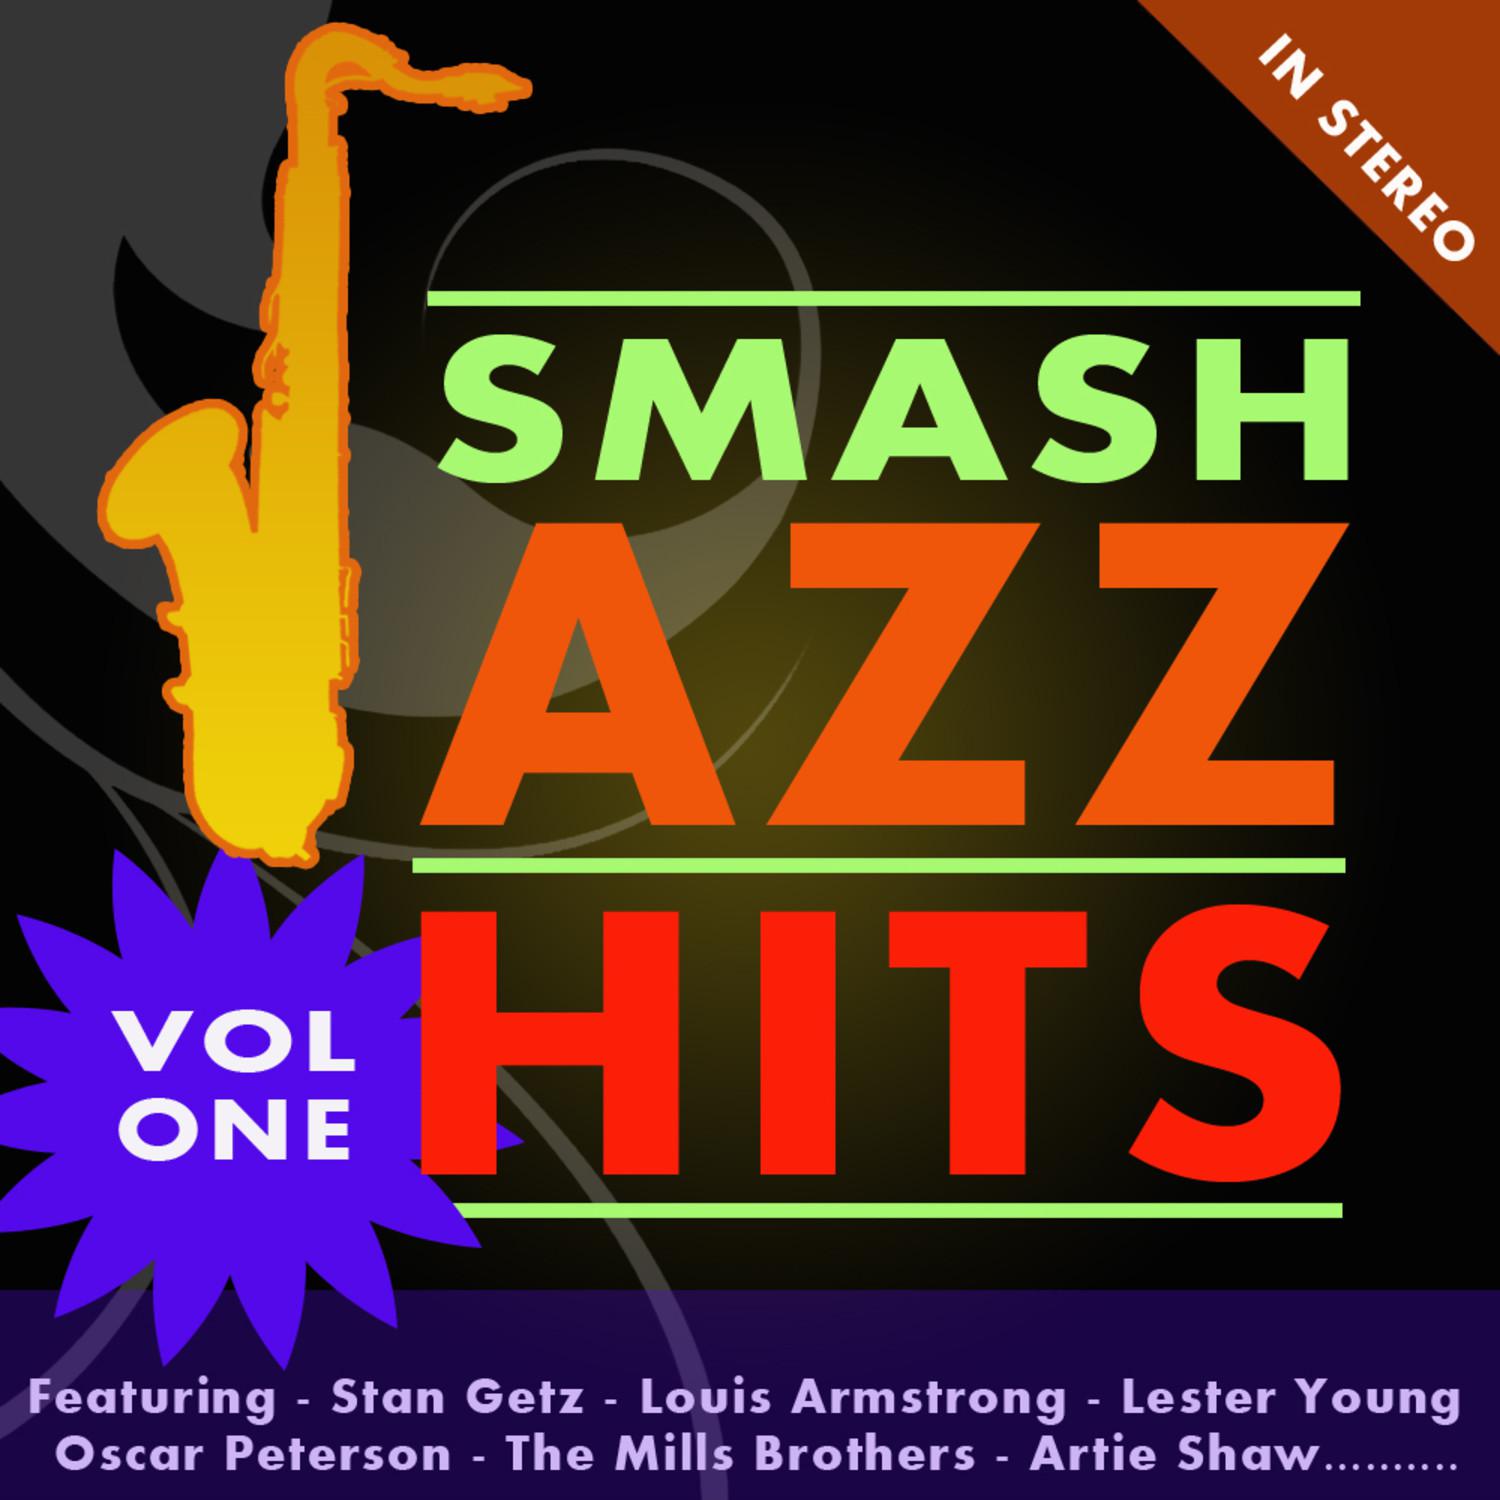 Smash Jazz Hits Vol 1